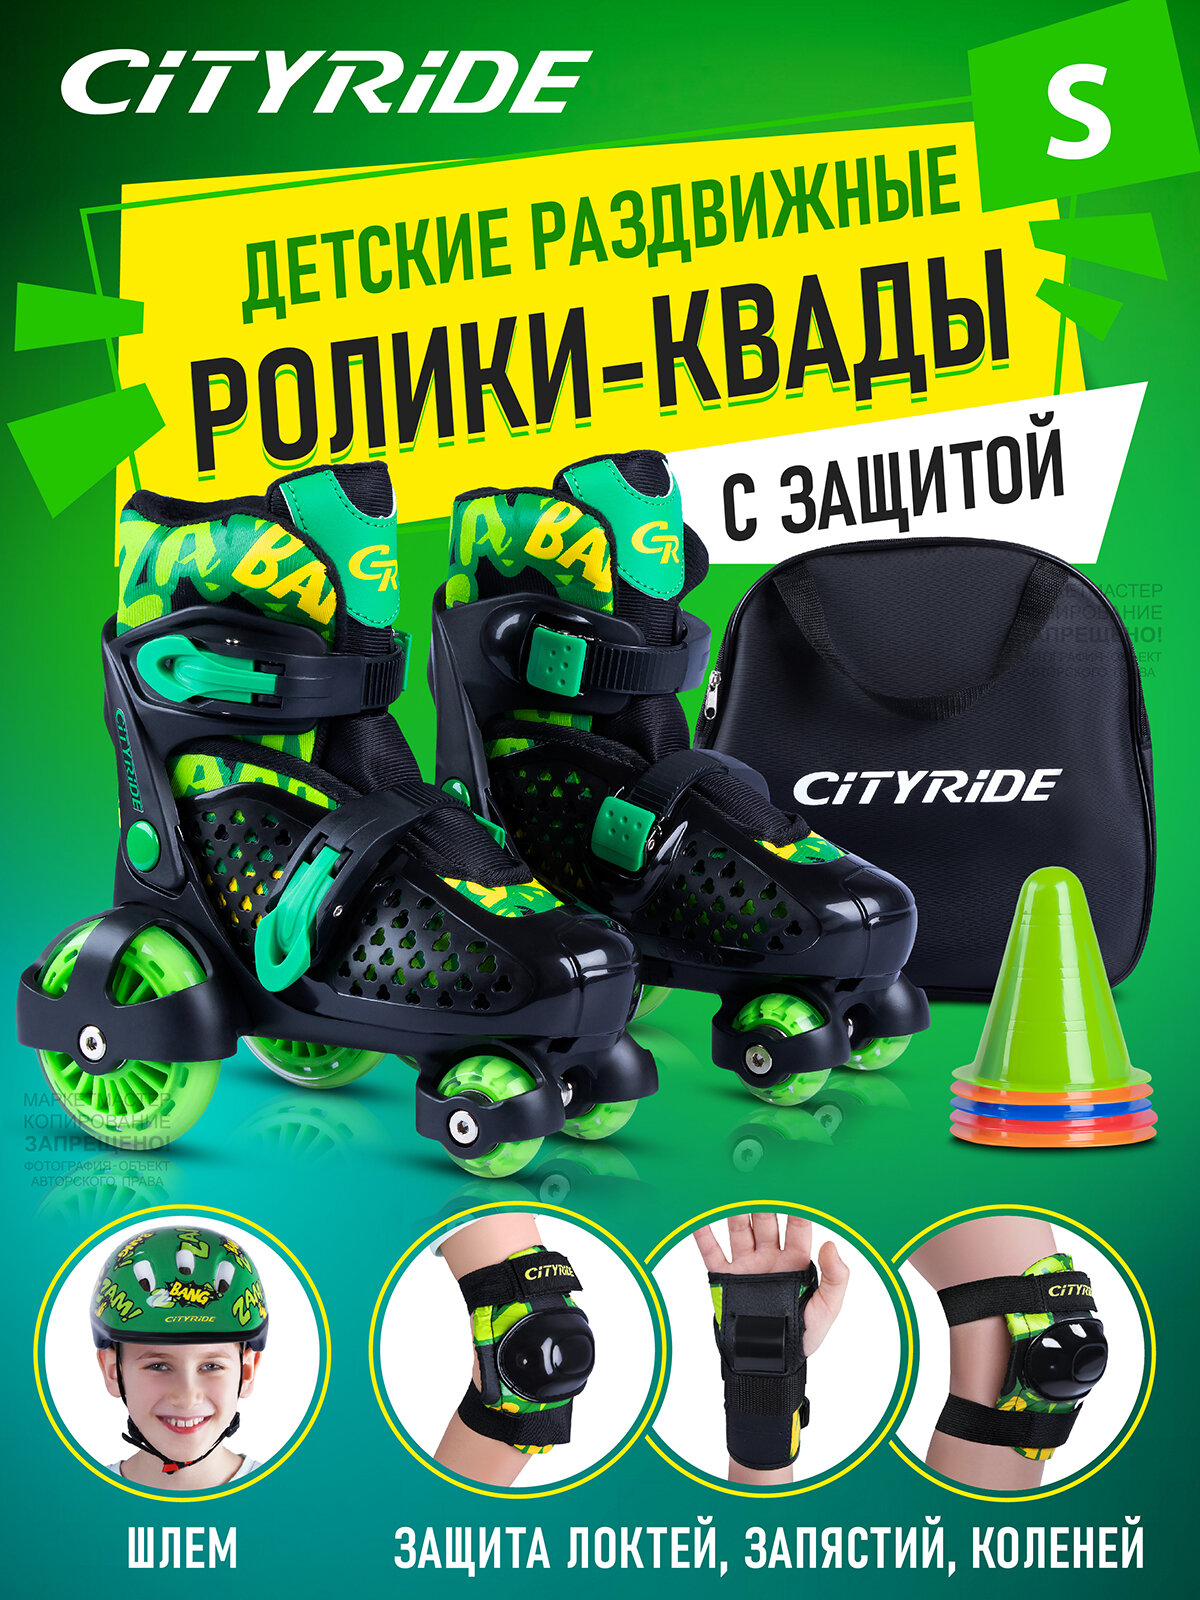 Набор CITYRIDE роликовые коньки-квады, шлем, защита, пластиковый мысок, колёса PU 80/40 мм, JB8800102/S